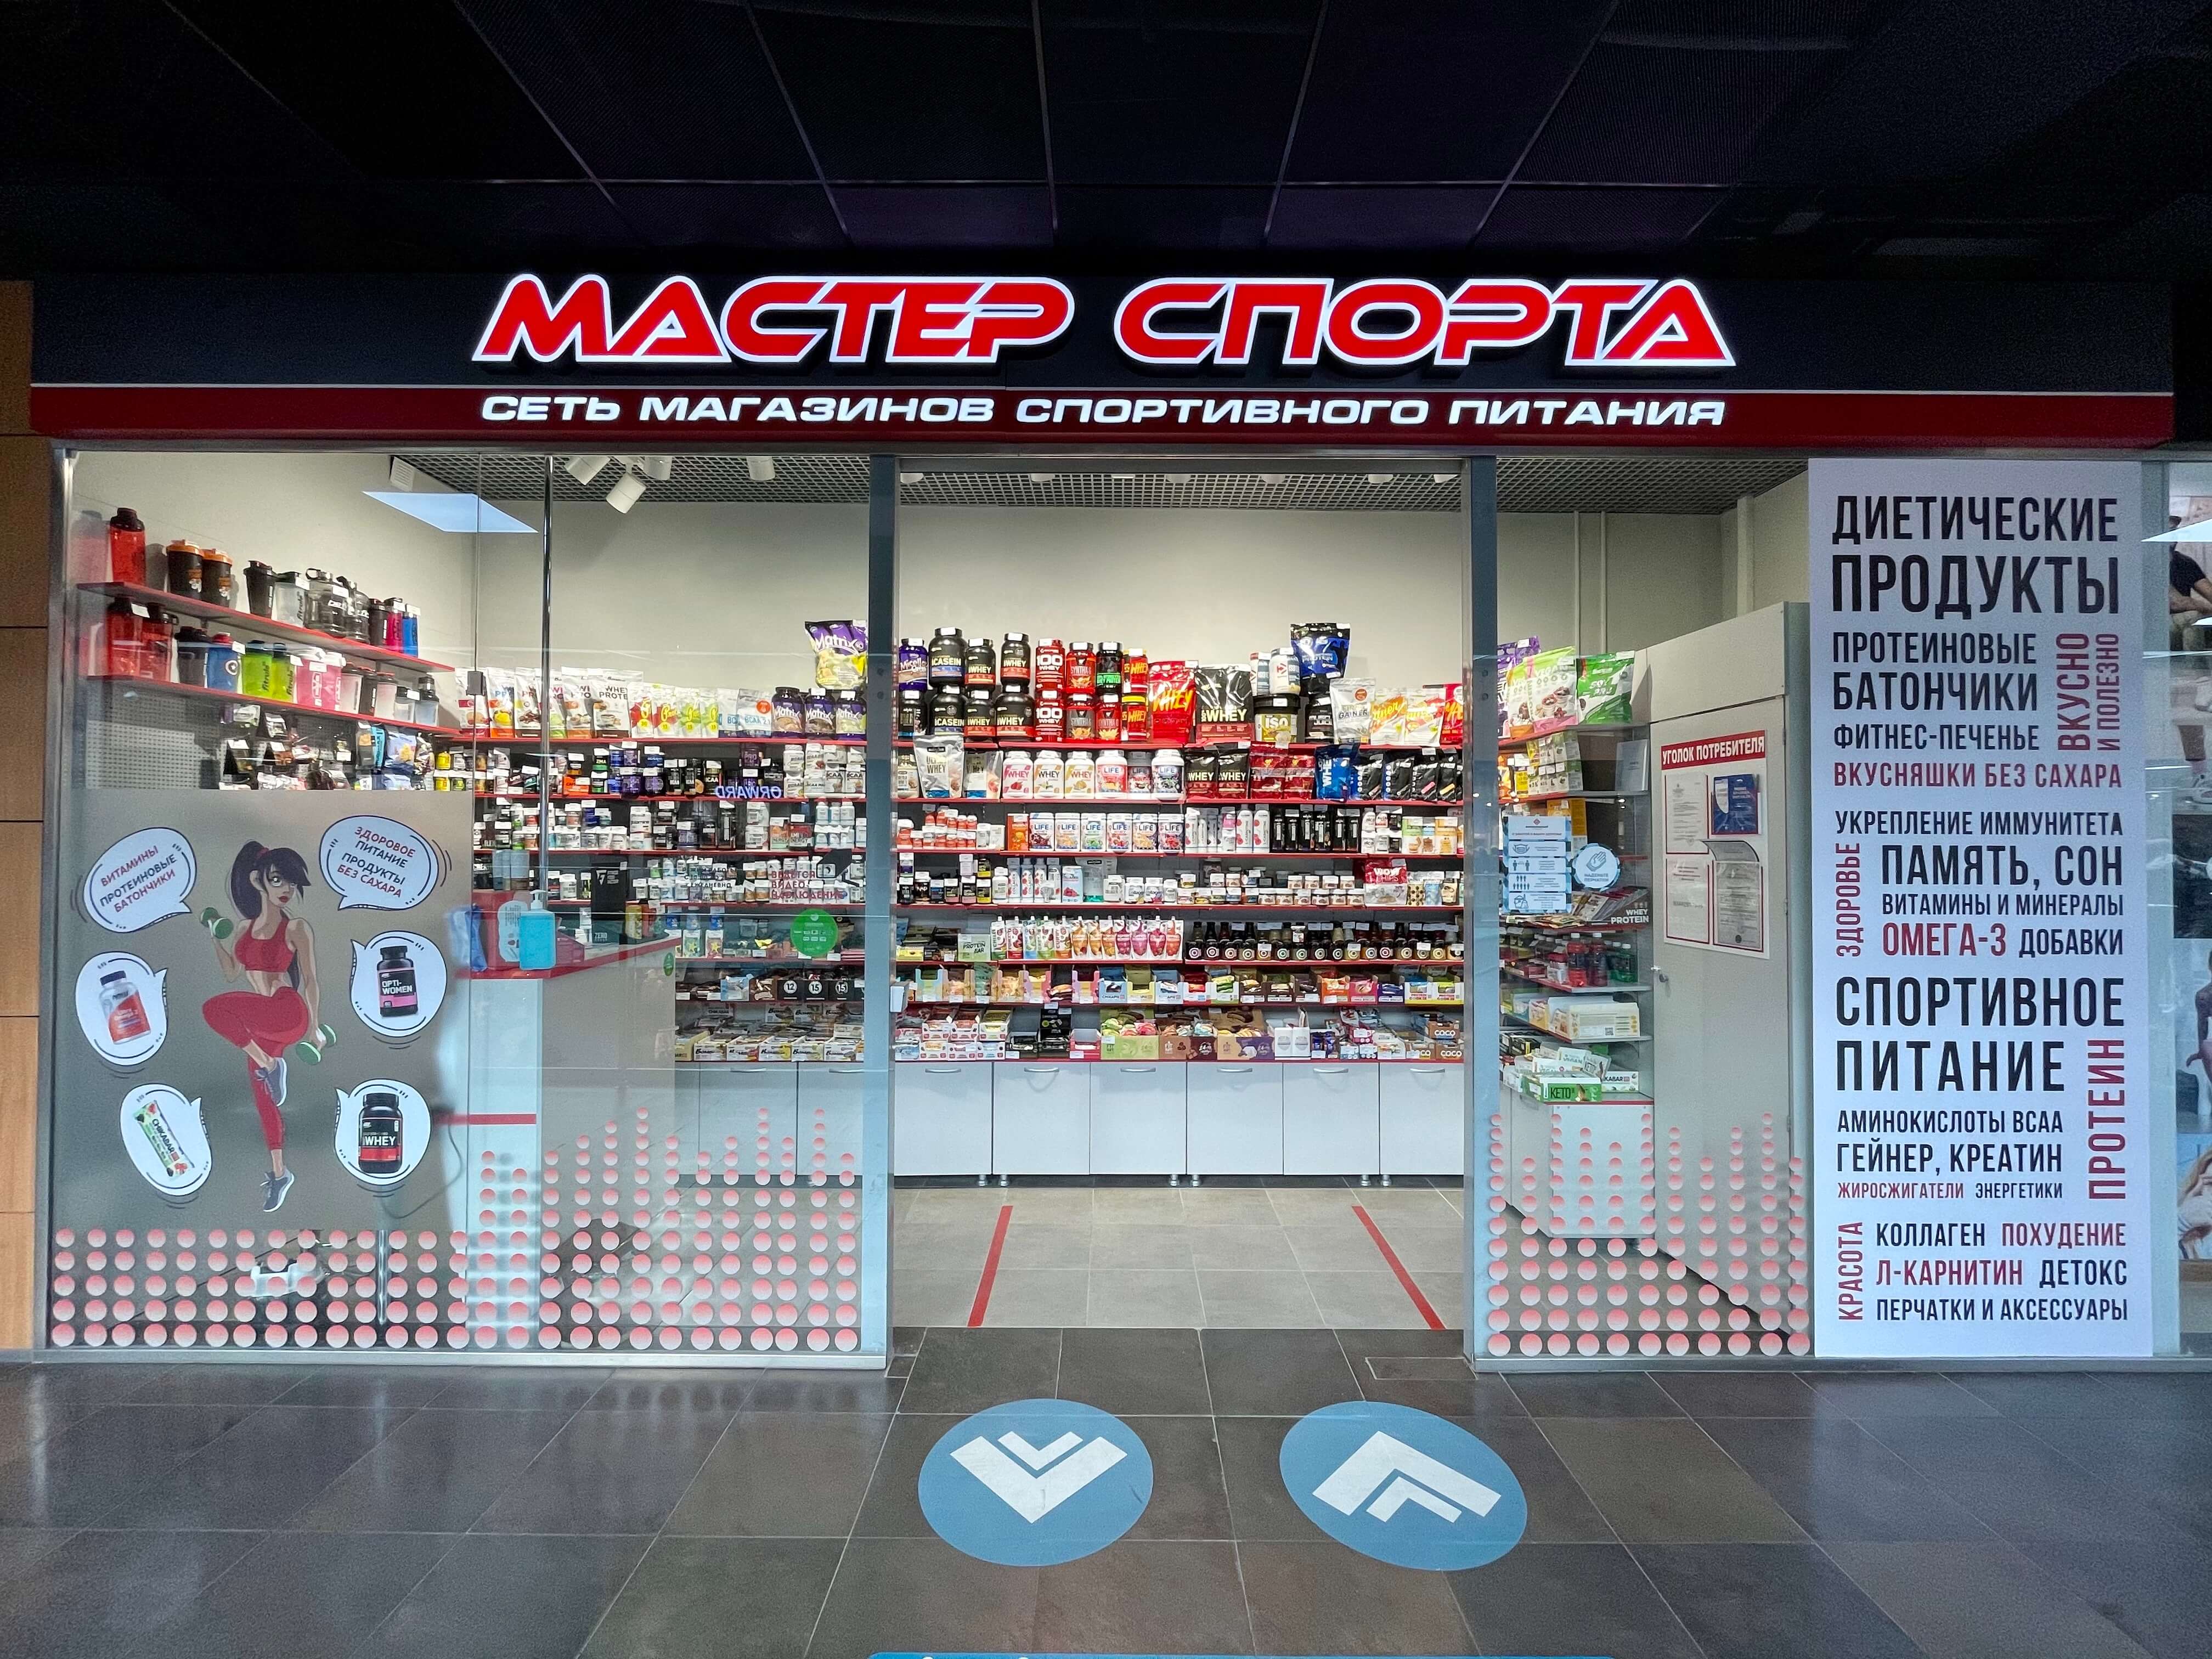 Ворошиловский Торговый Центр Какие Магазины